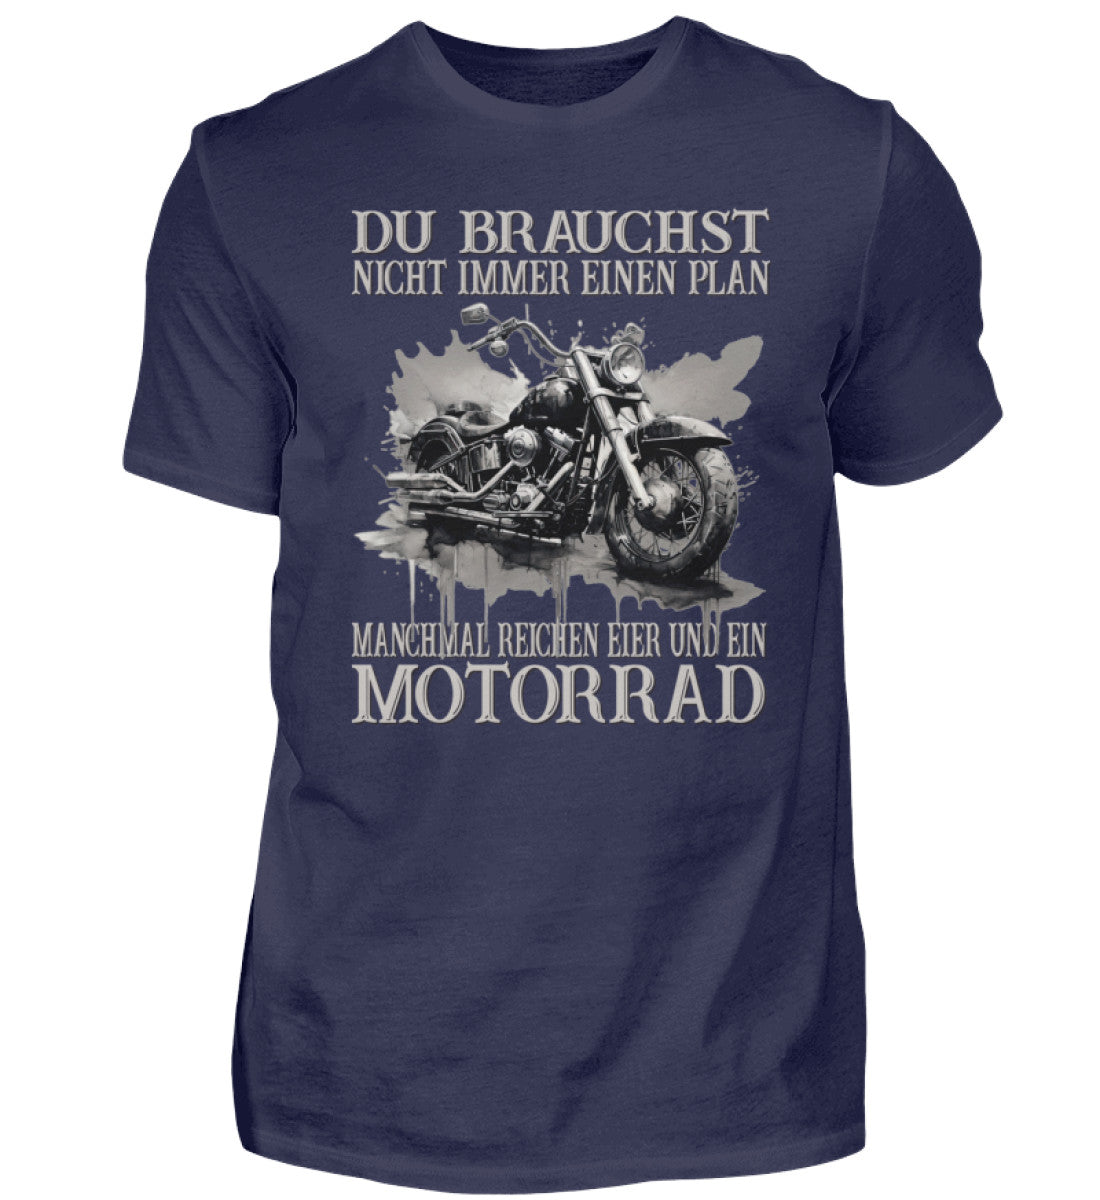 Ein Biker T-Shirt für Motorradfahrer von Wingbikers mit dem Aufdruck, Du brauchst nicht immer einen Plan - Manchmal reichen Eier und ein Motorrad - in navy blau.